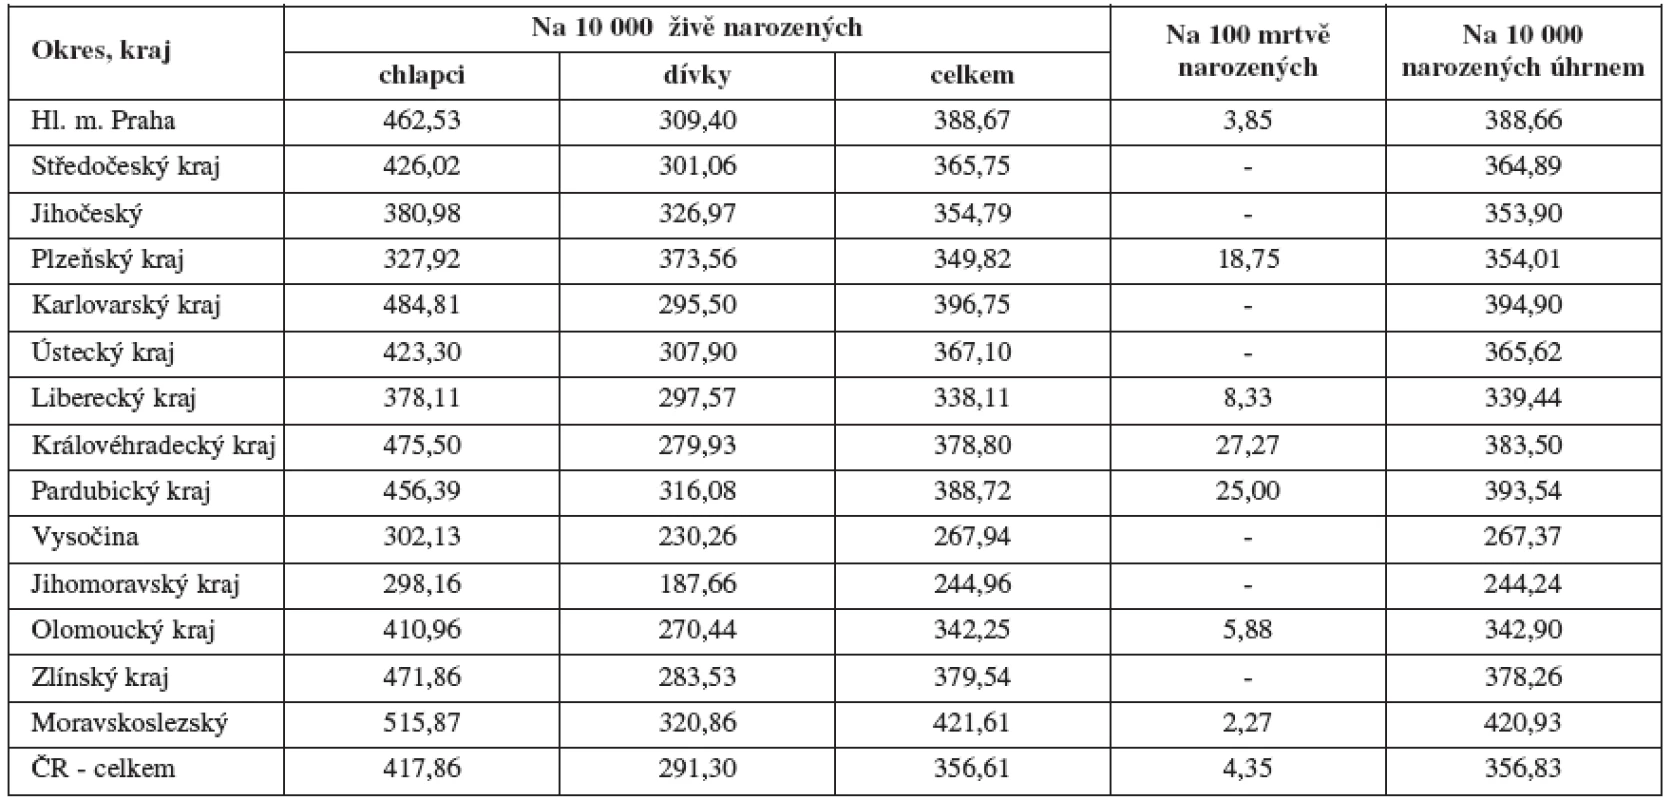 Zastoupení průměrné incidence vrozených vad v jednotlivých krajích České republiky za rok 2006